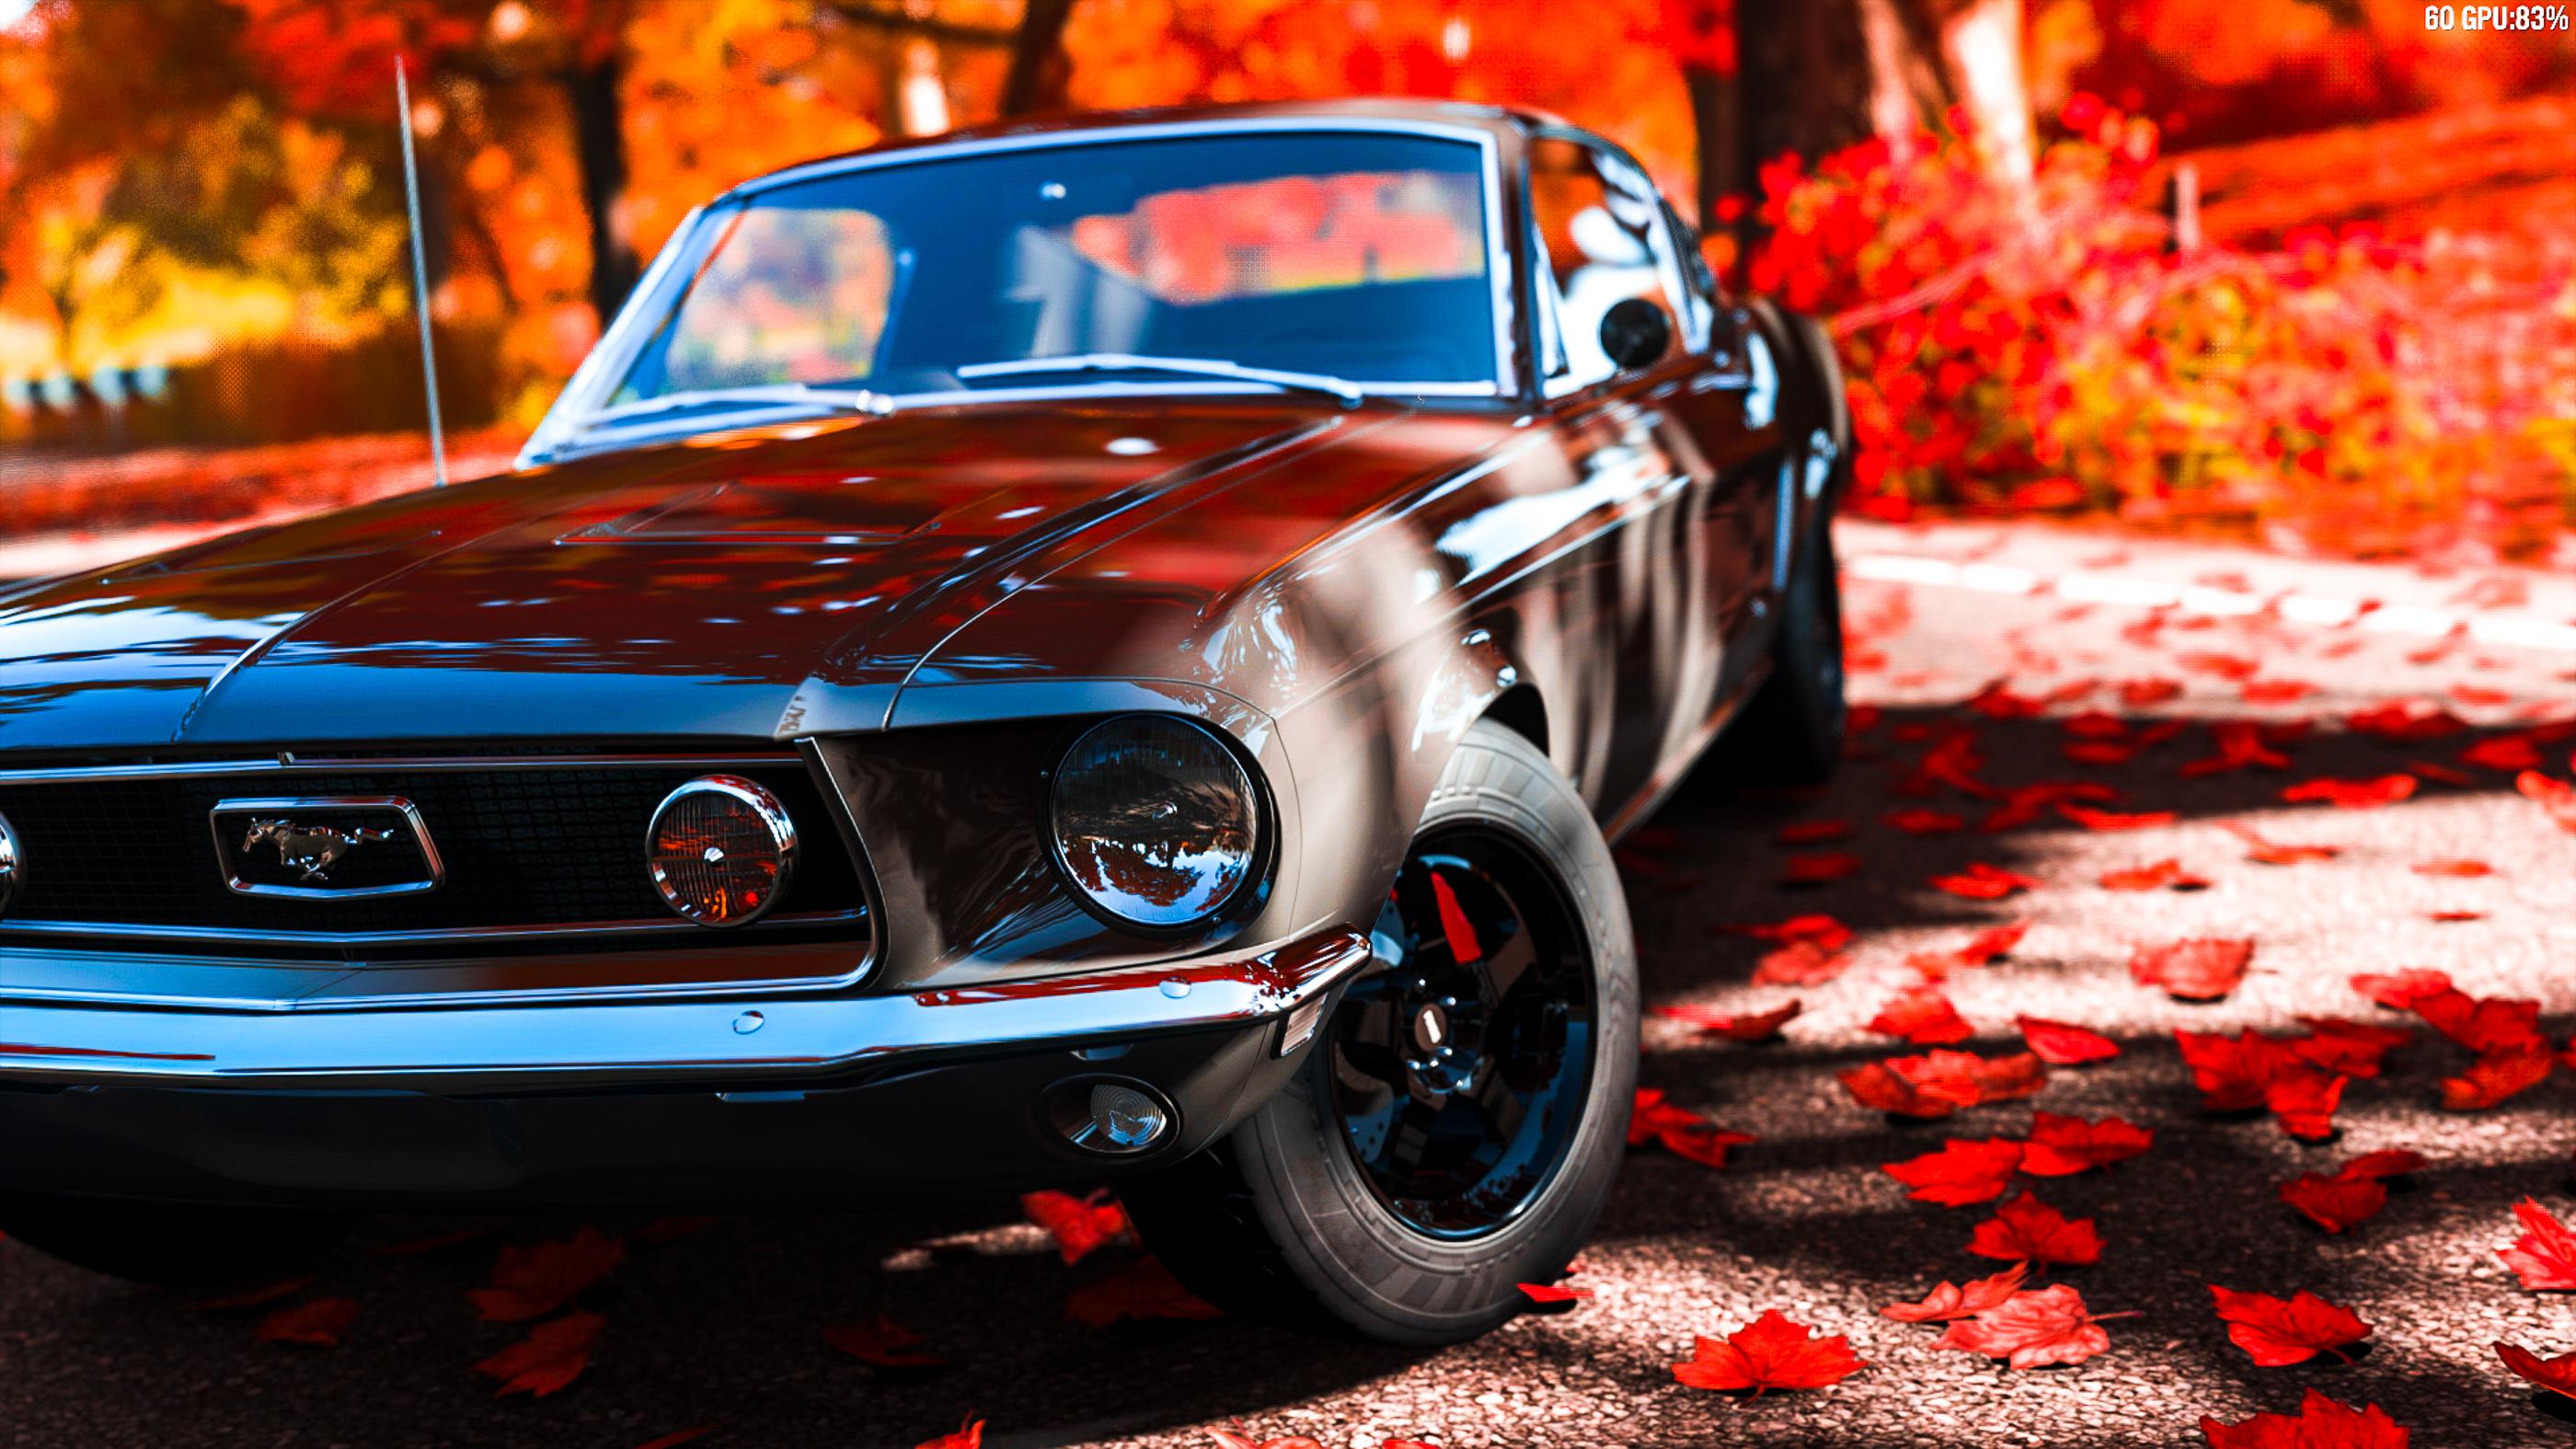 Mustang 4K wallpapers for your desktop